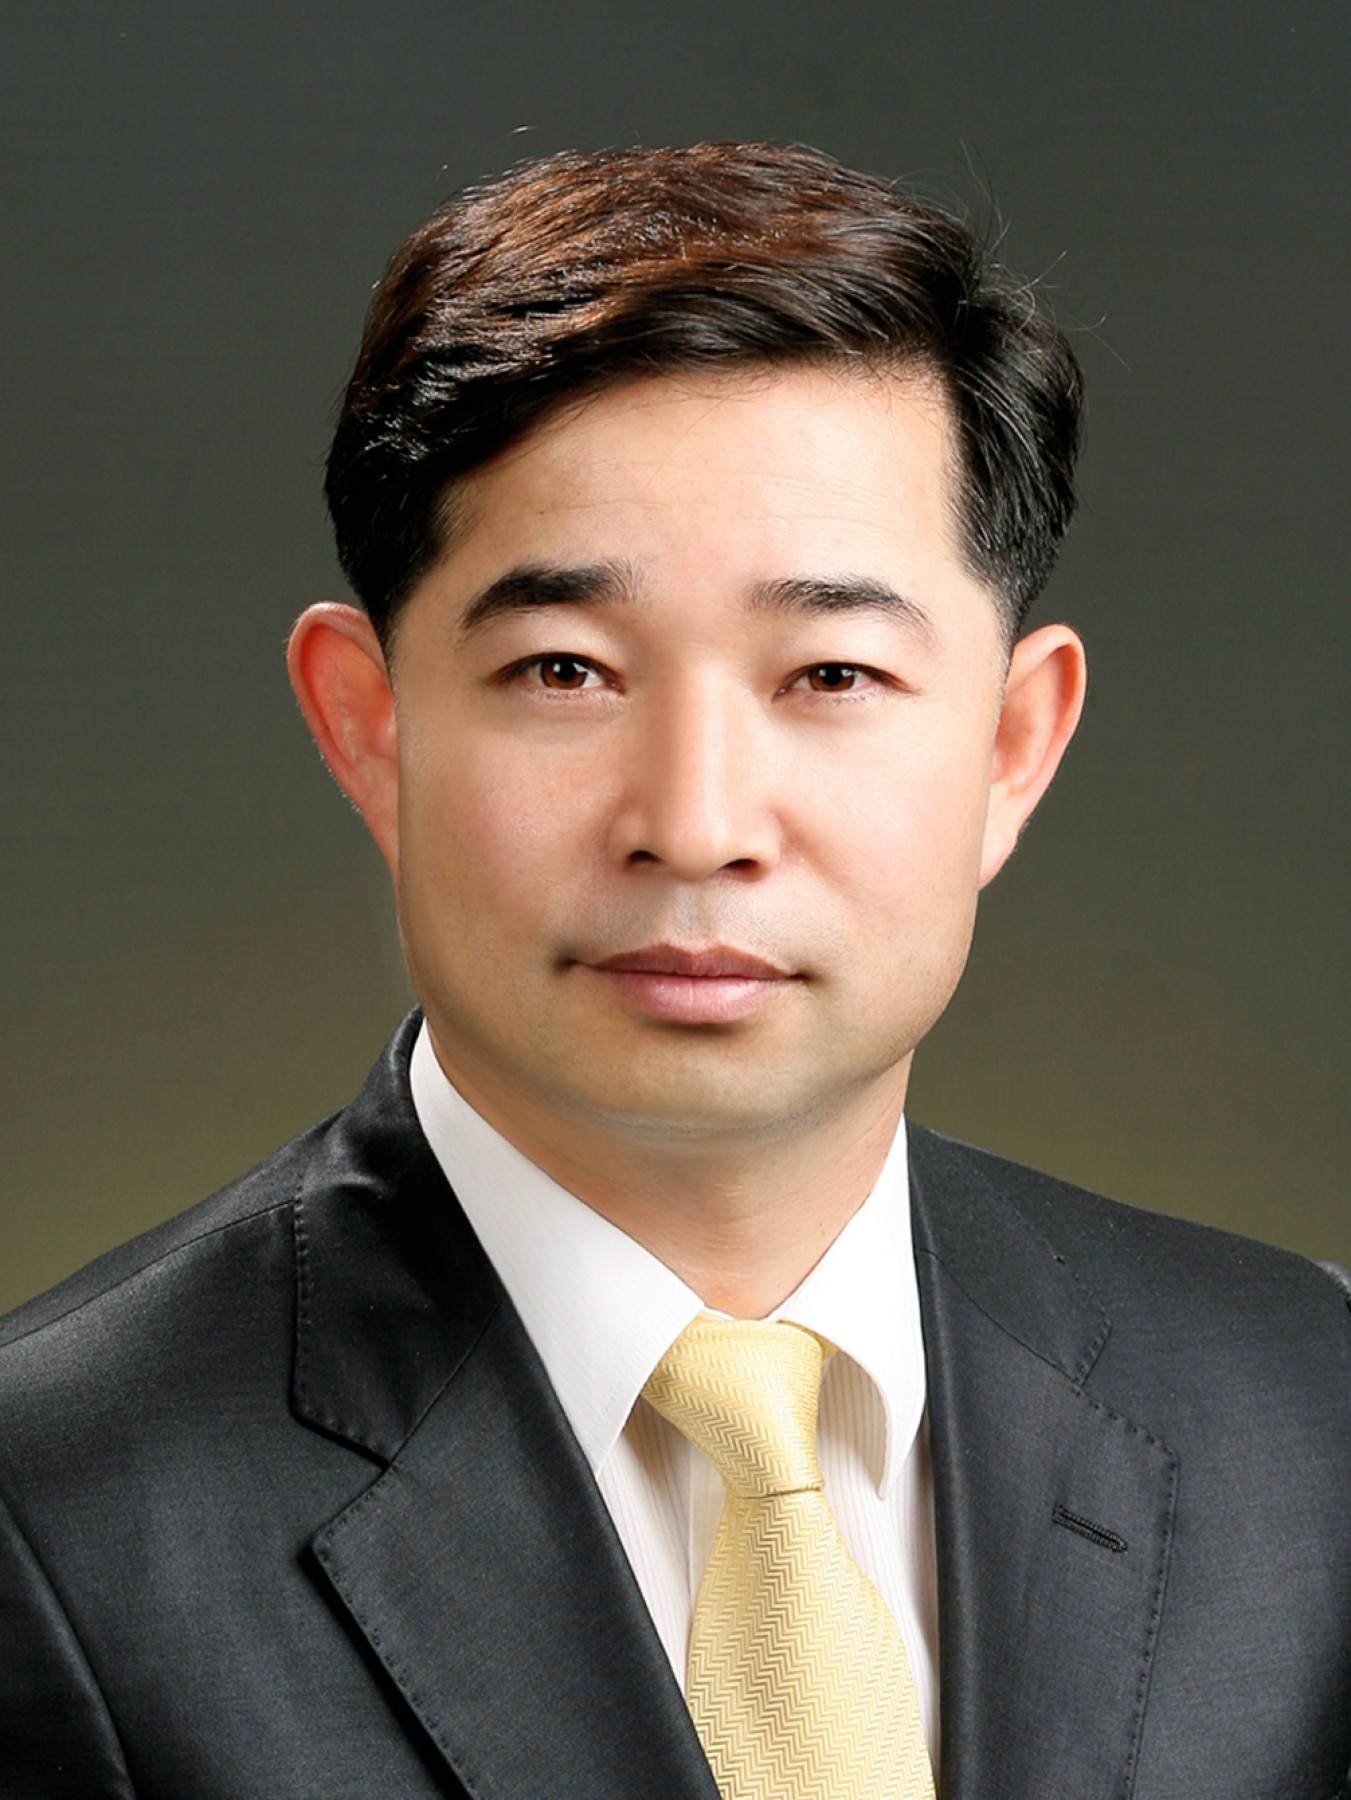 김기두 의원 “행복한 태안을 위한 세가지 제안”